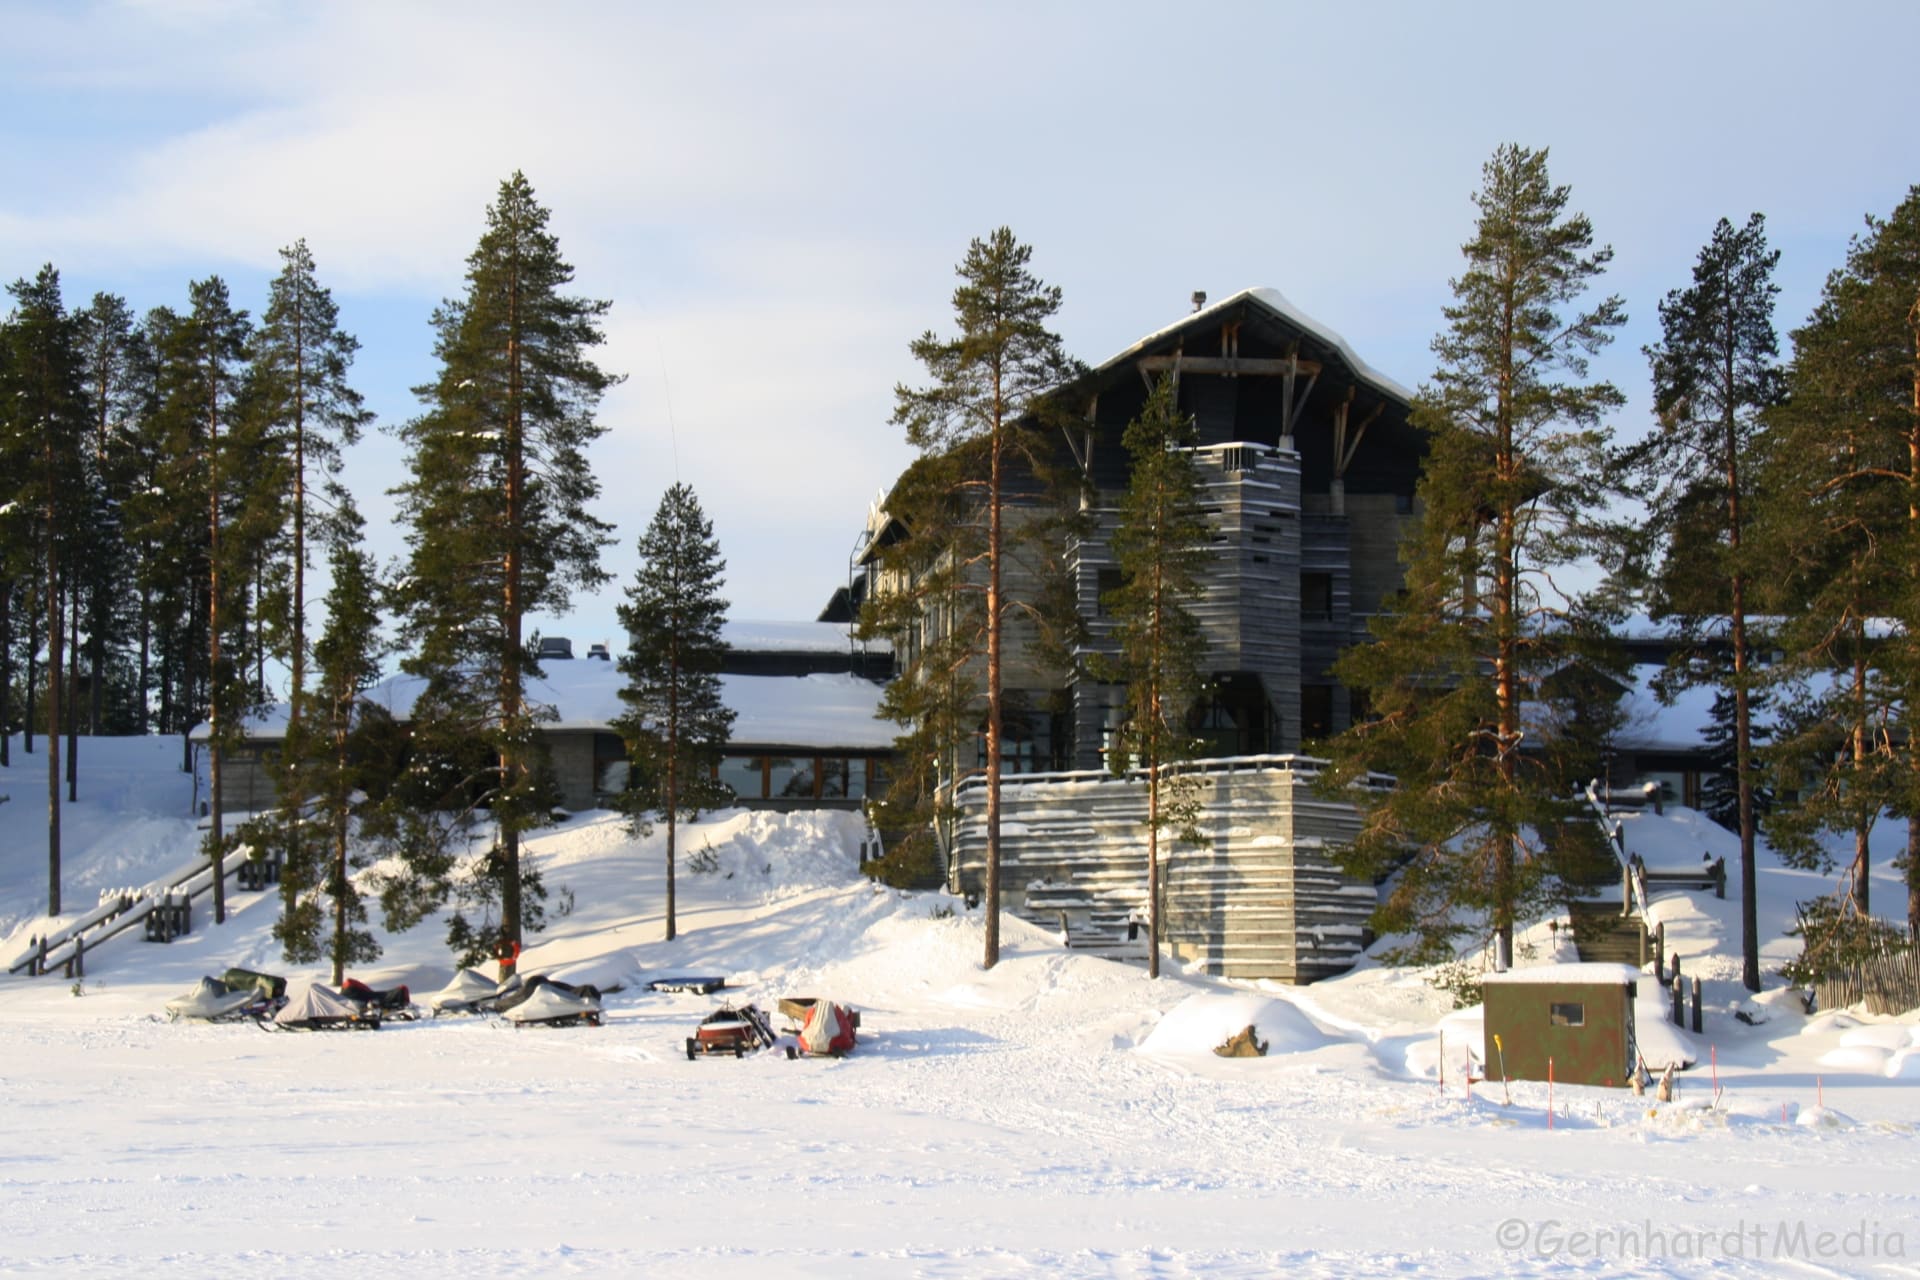 Hotel Kalevala in the winter